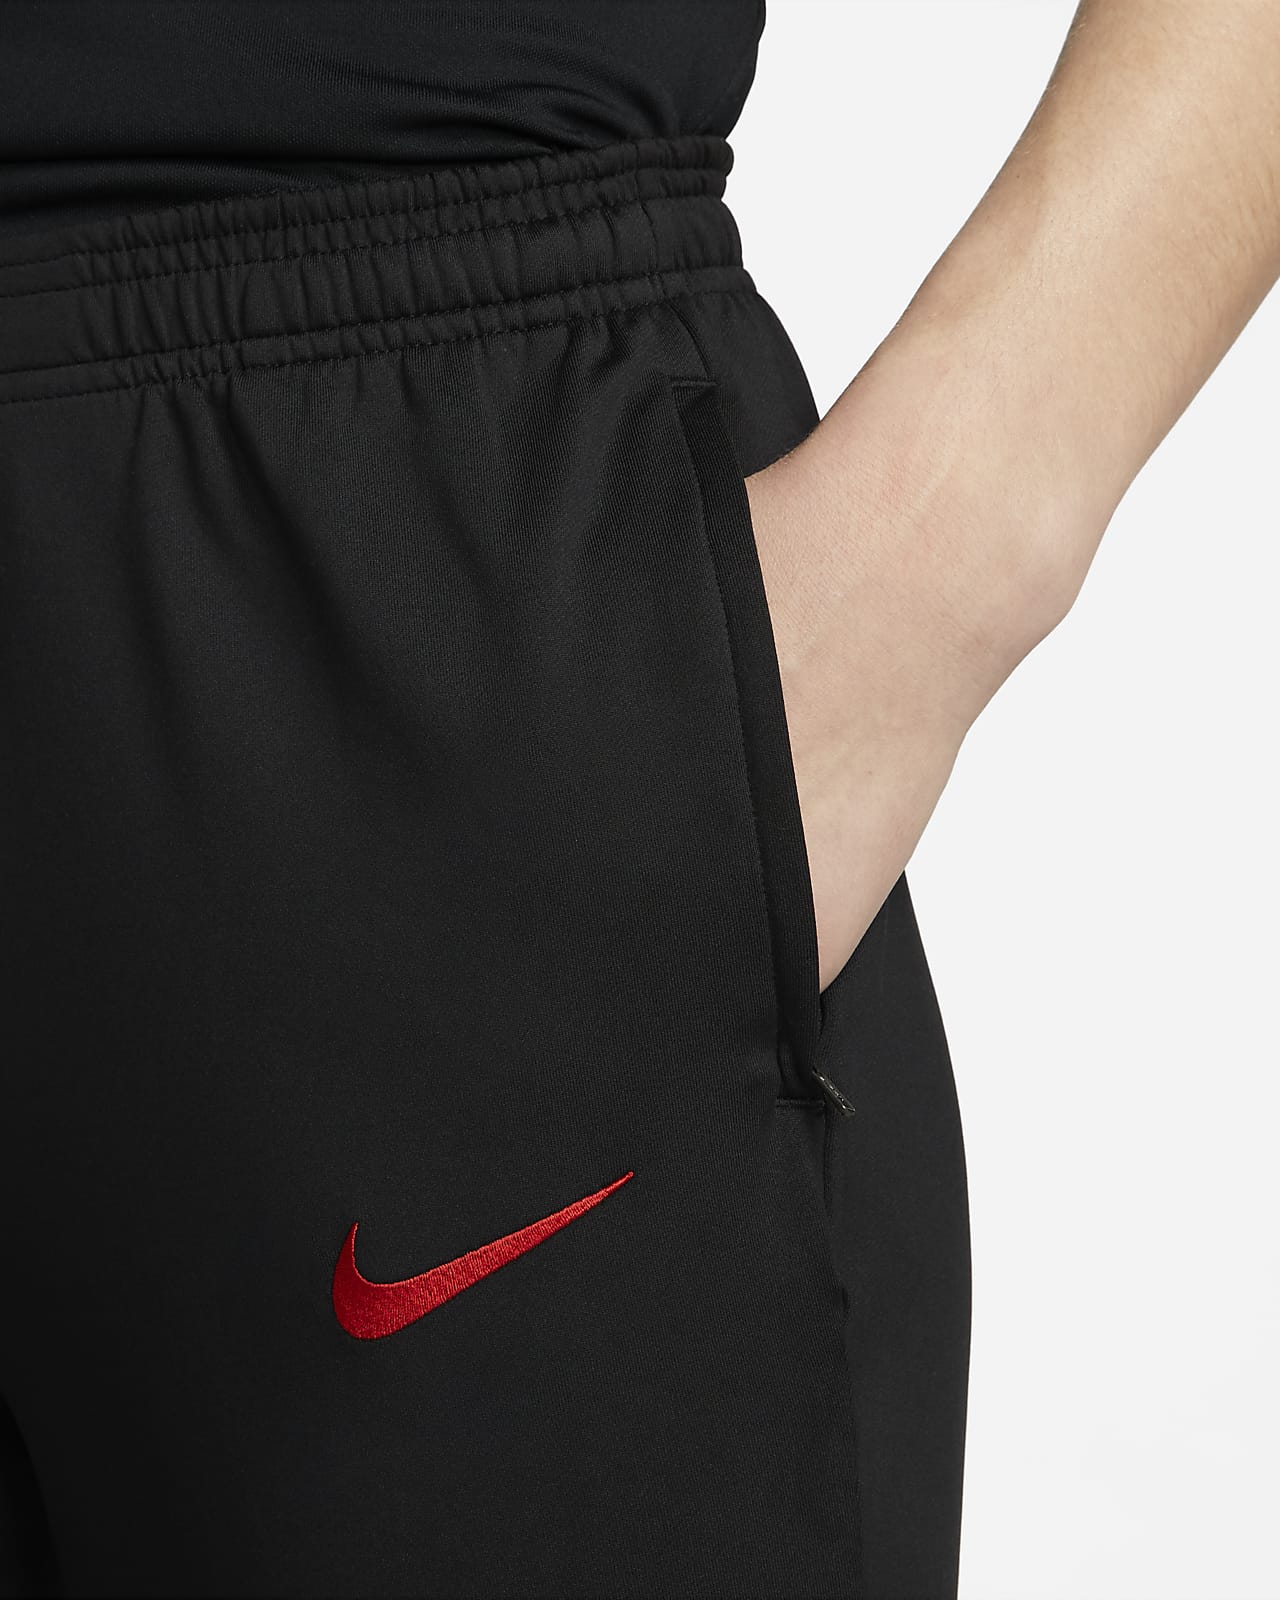 Golf Pants Nike, Women's Size 14, Black Dri-fit 